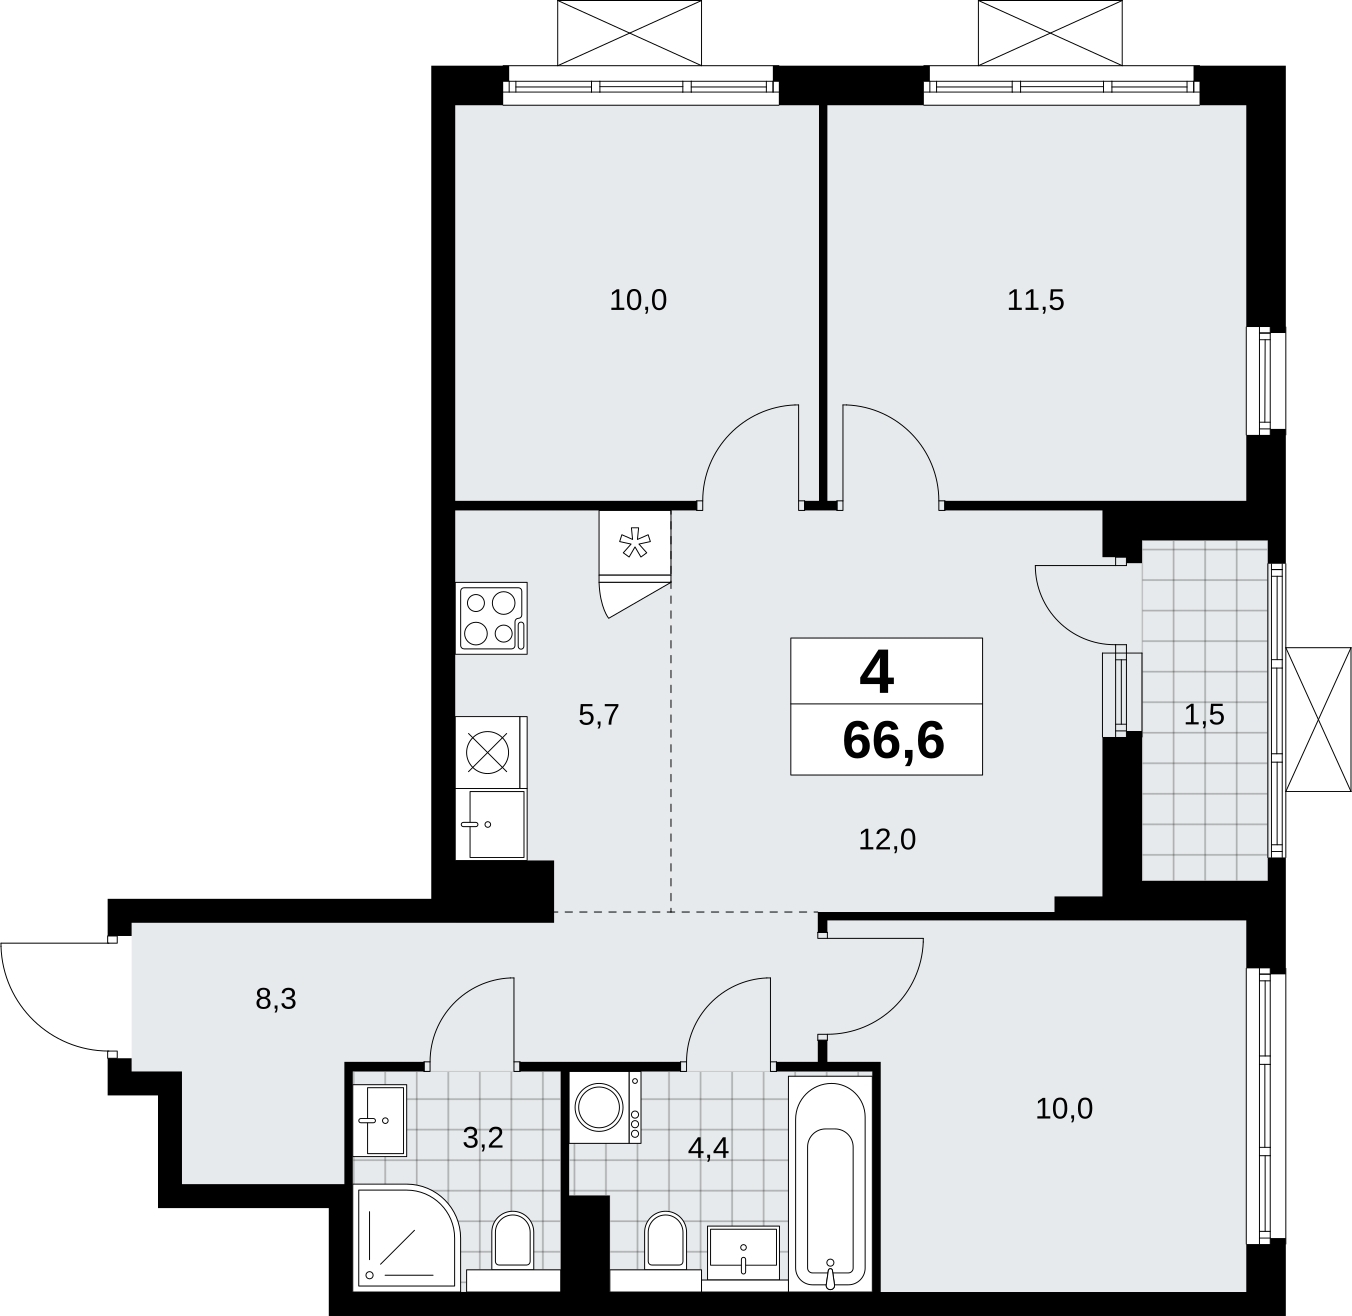 Продается многокомнатная квартира с отделкой в новом жилом комплексе, рядом с метро